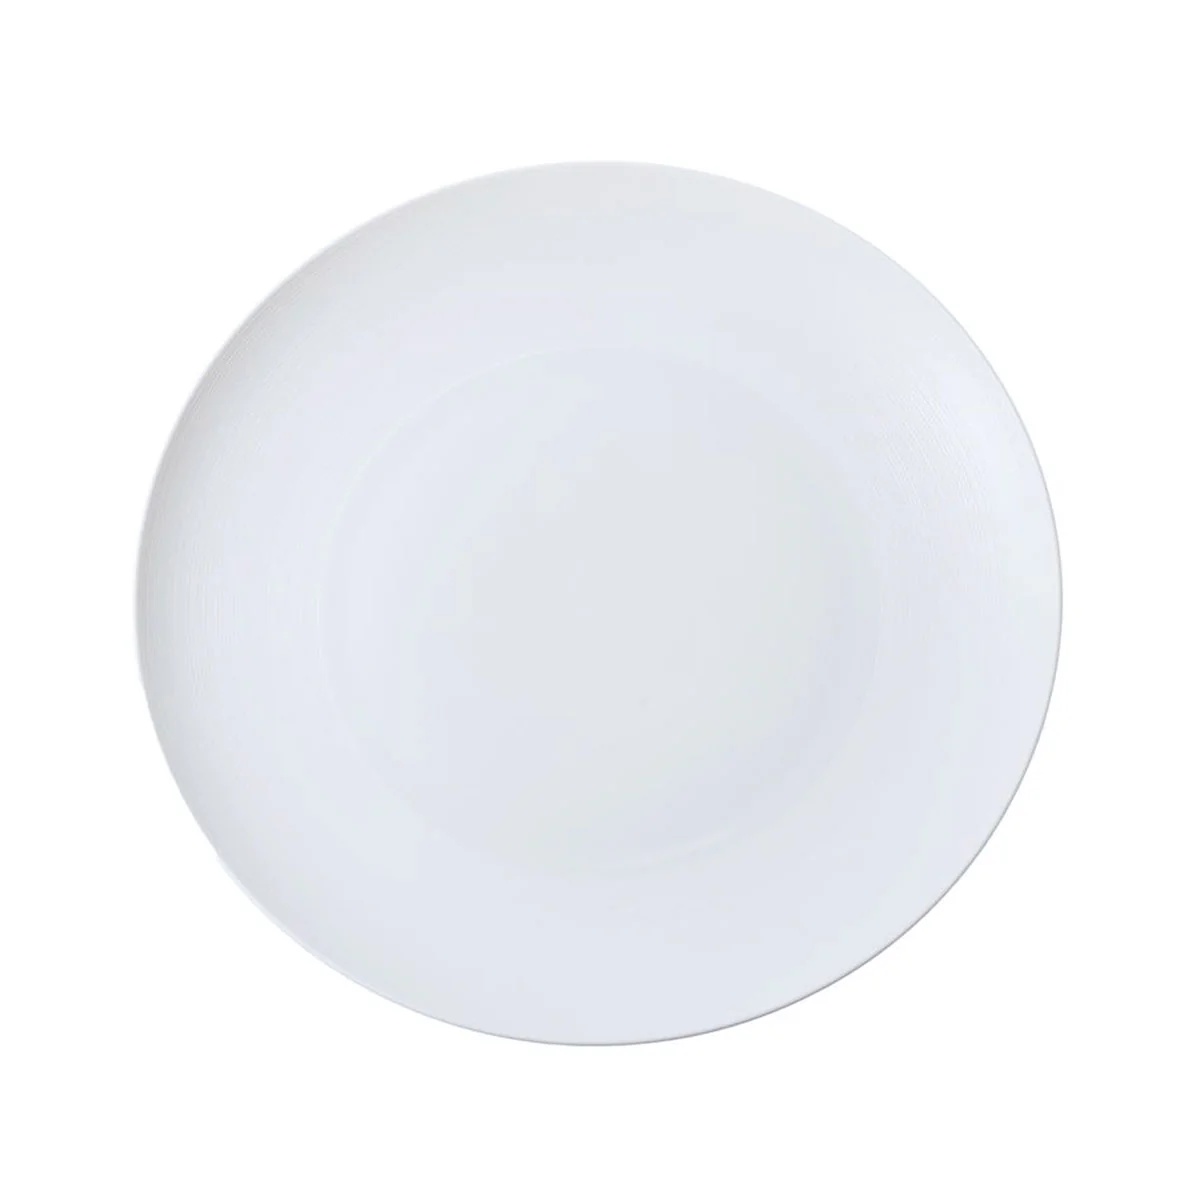 HEMISPHERE White Satin - Flat round dish, maxi